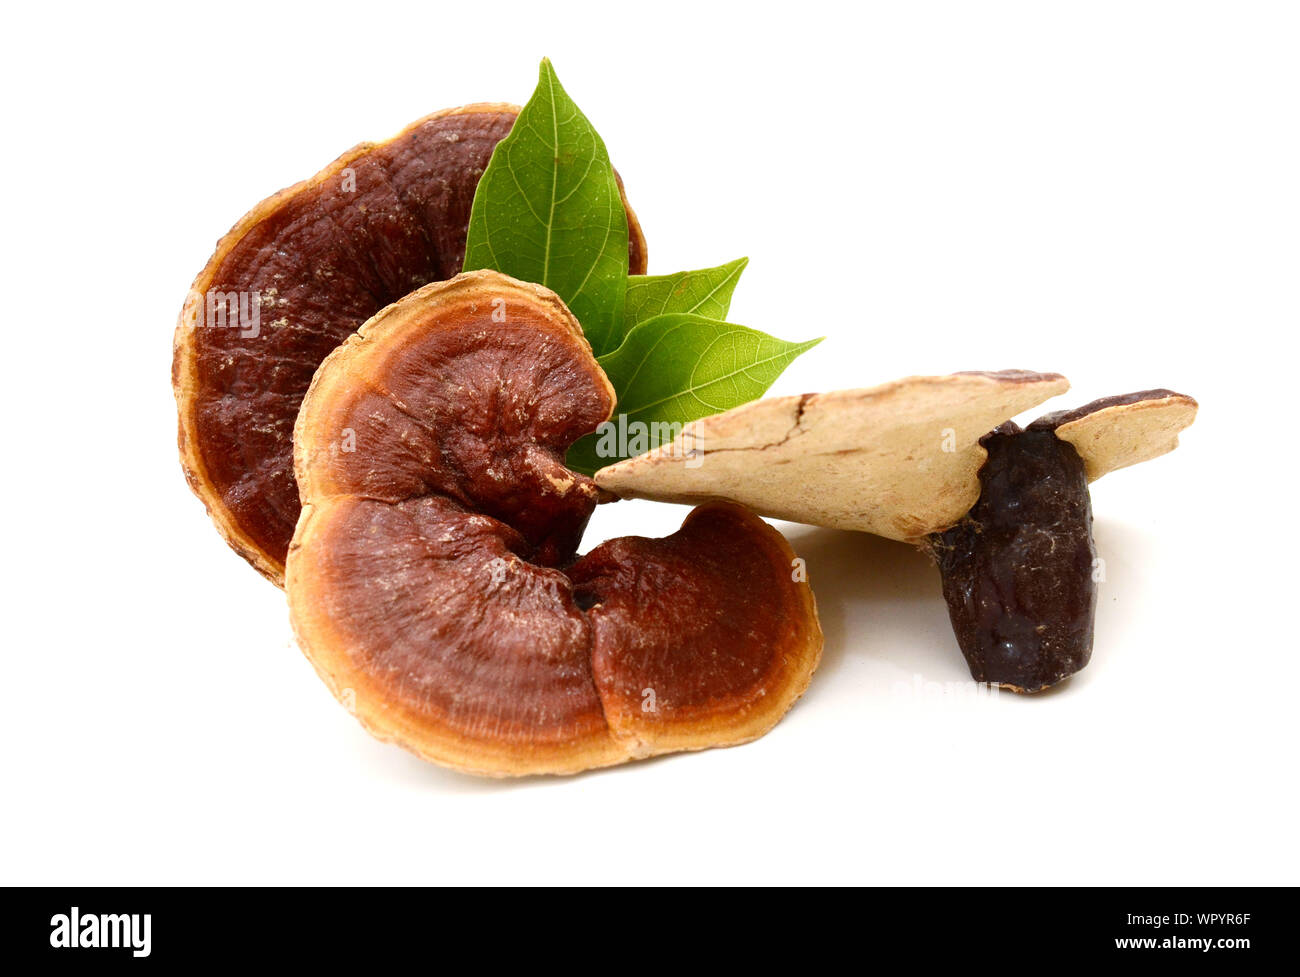 Lingzhi mushroom, Reishi mushroom and the leaf on white background. Stock Photo